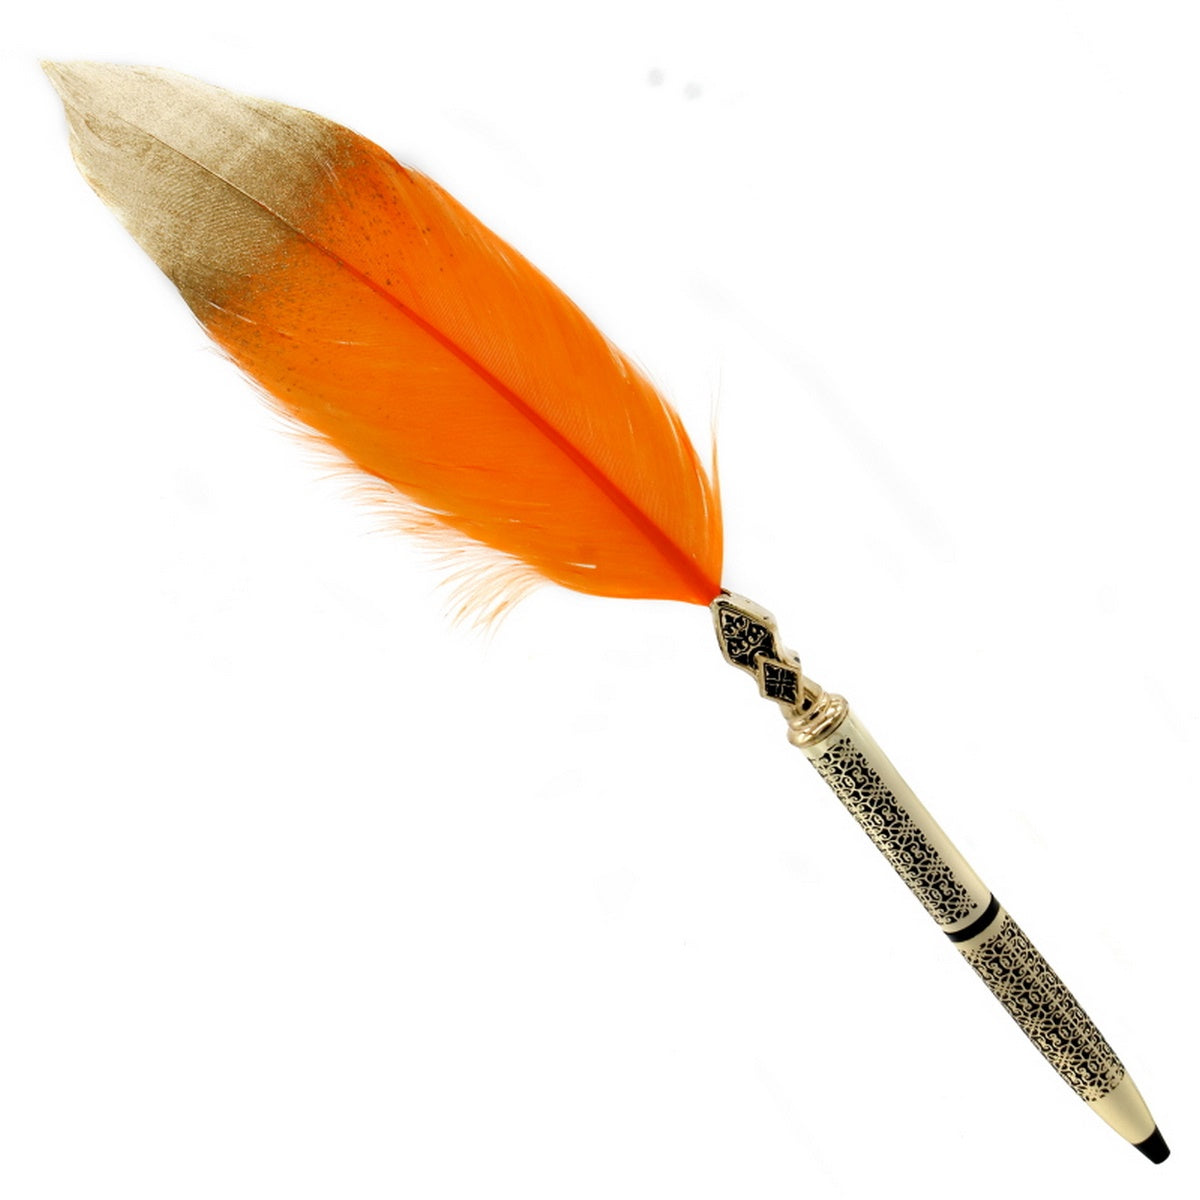 jags-mumbai Feather Pens Feather Ball Pen Design Gold